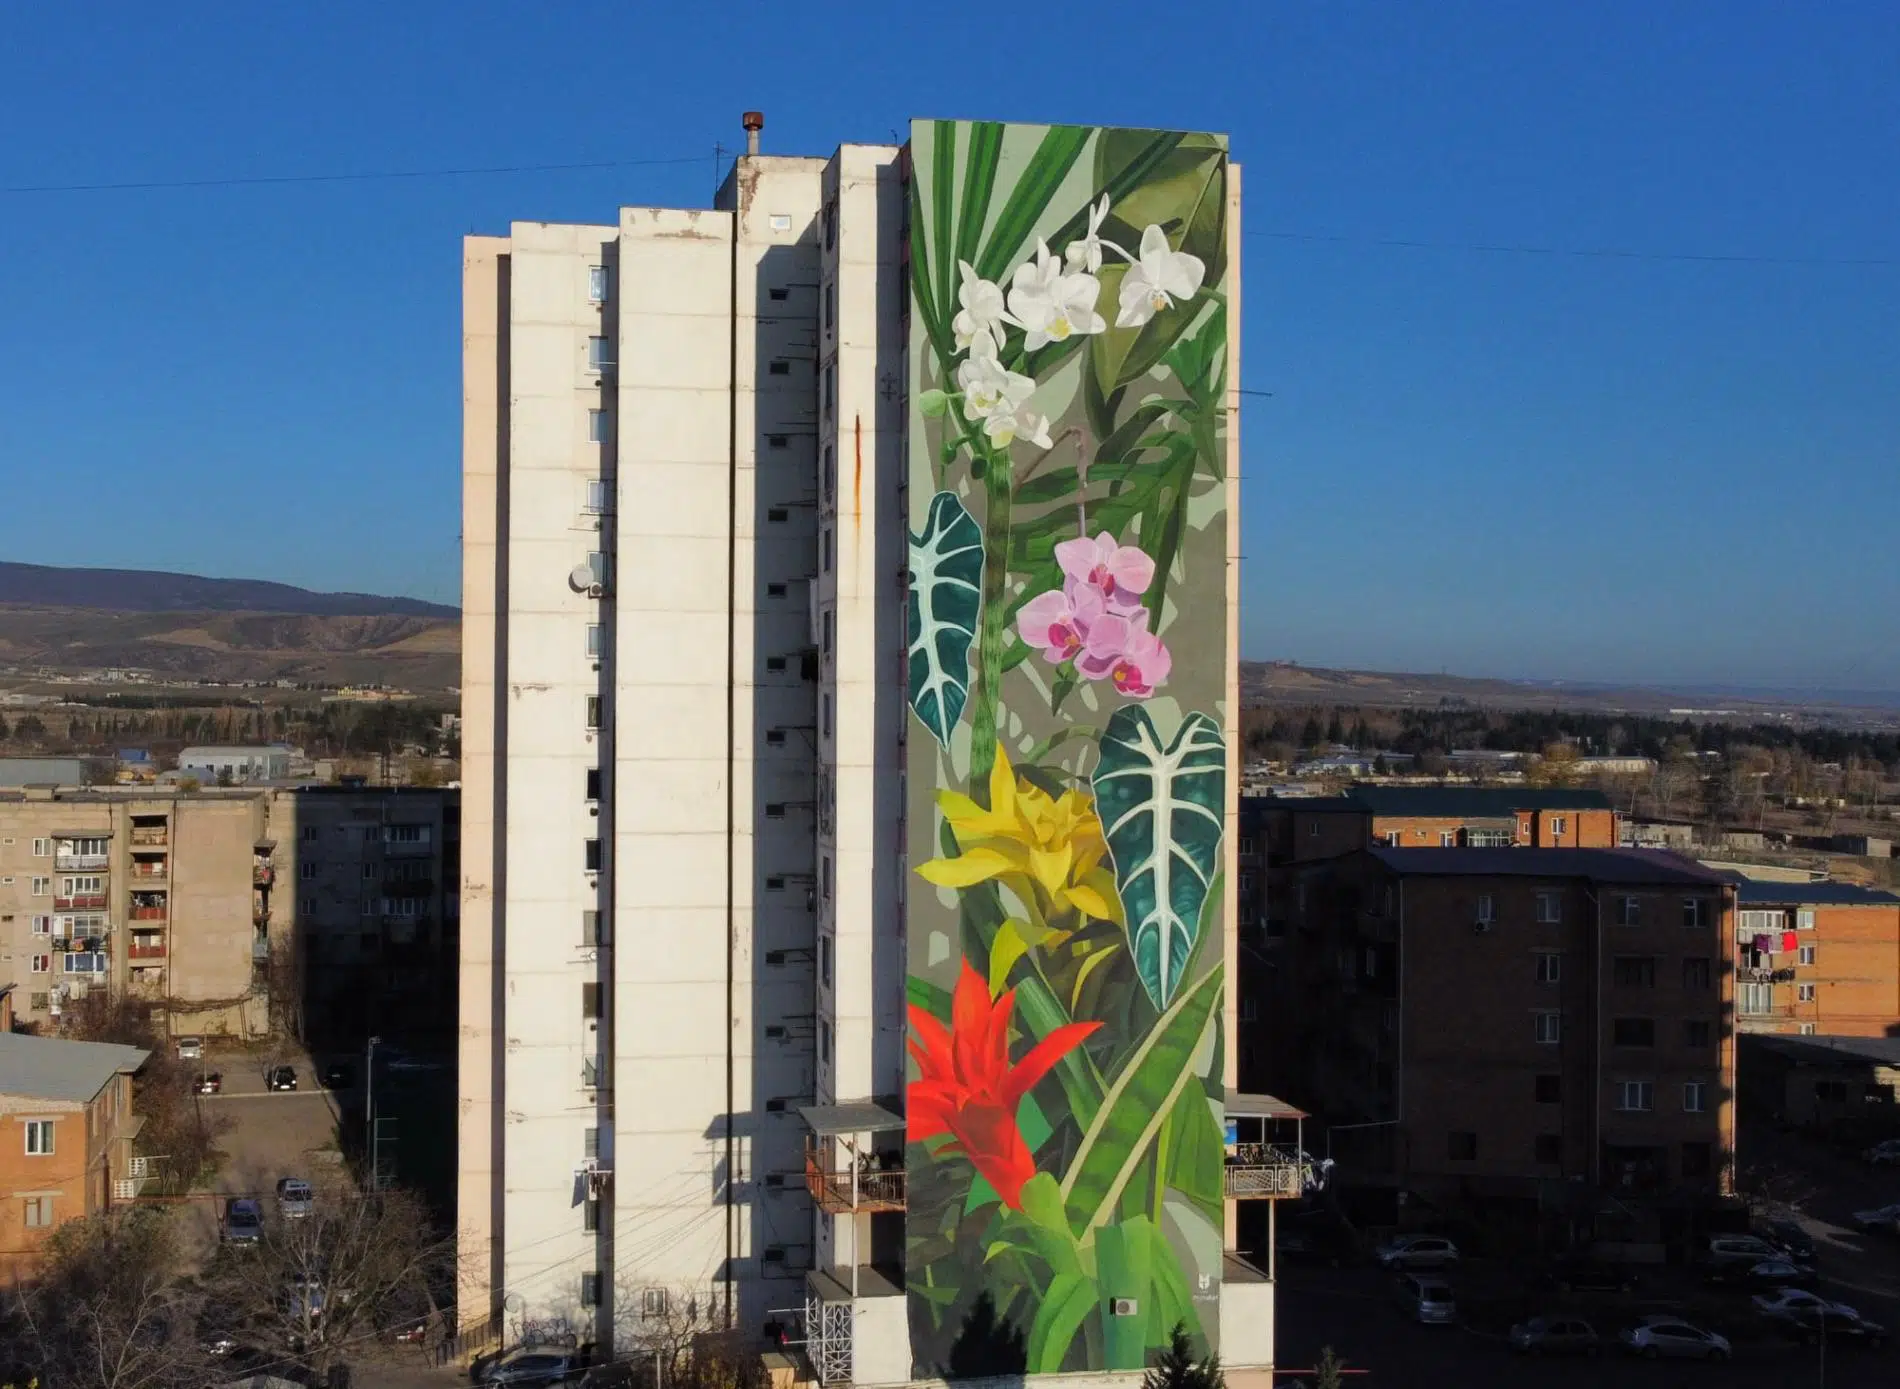 tbilisi mural fest, mural de flores en edificio por thiago mazza